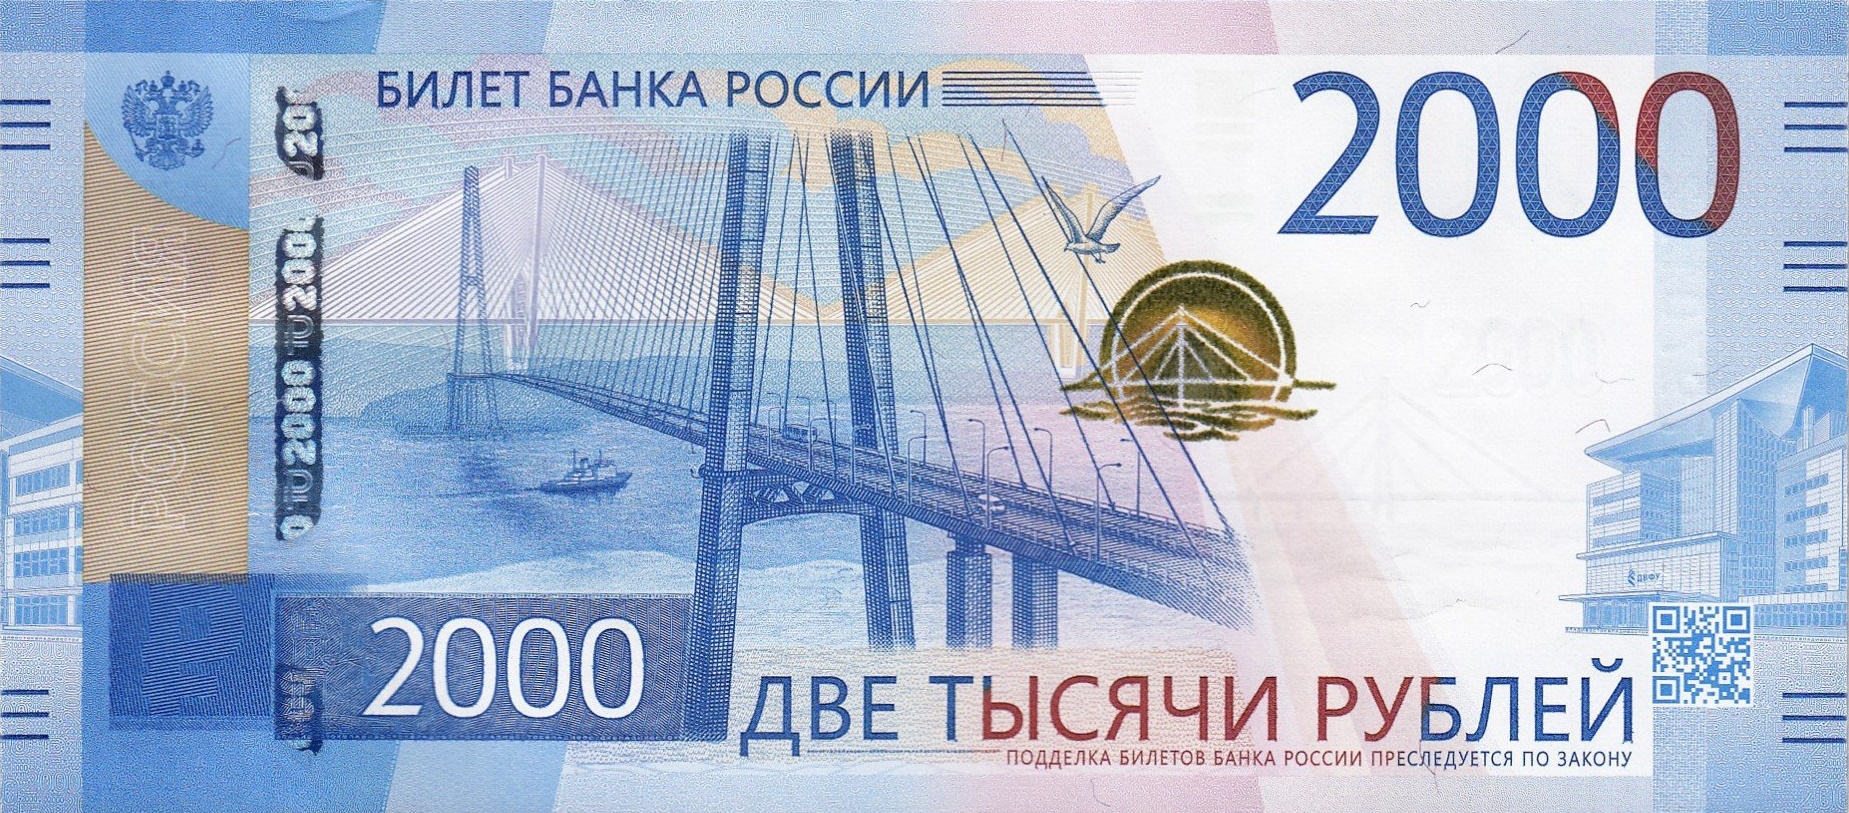 你不知道的俄罗斯卢布最高面额5000上印的是侵华头目